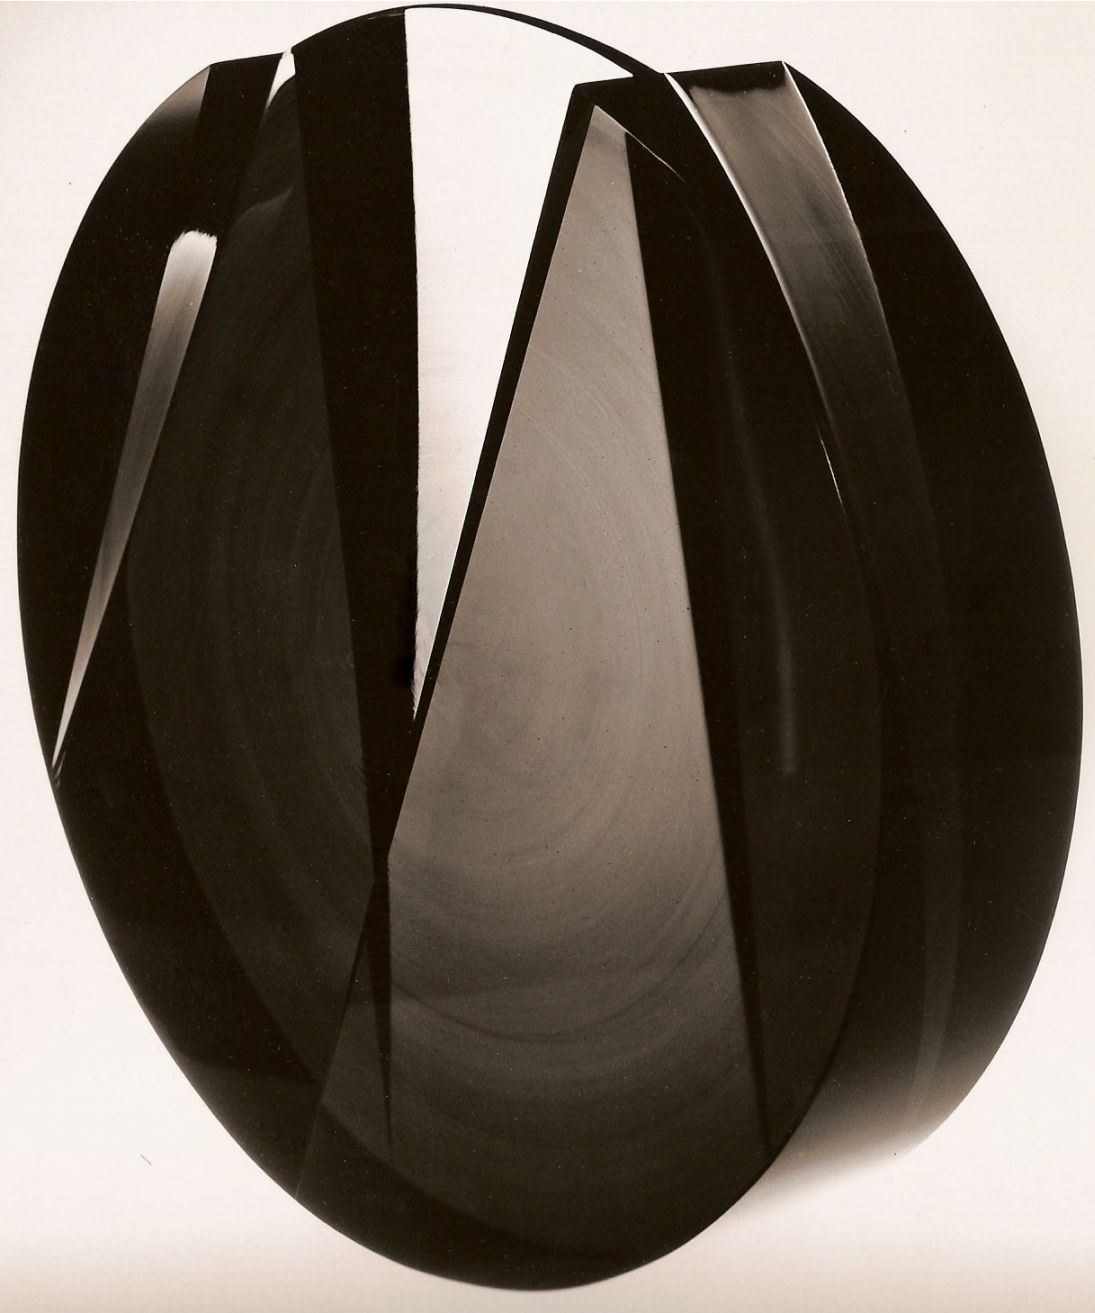 objekt, kouř.sklo, průměr 28 cm, 1980